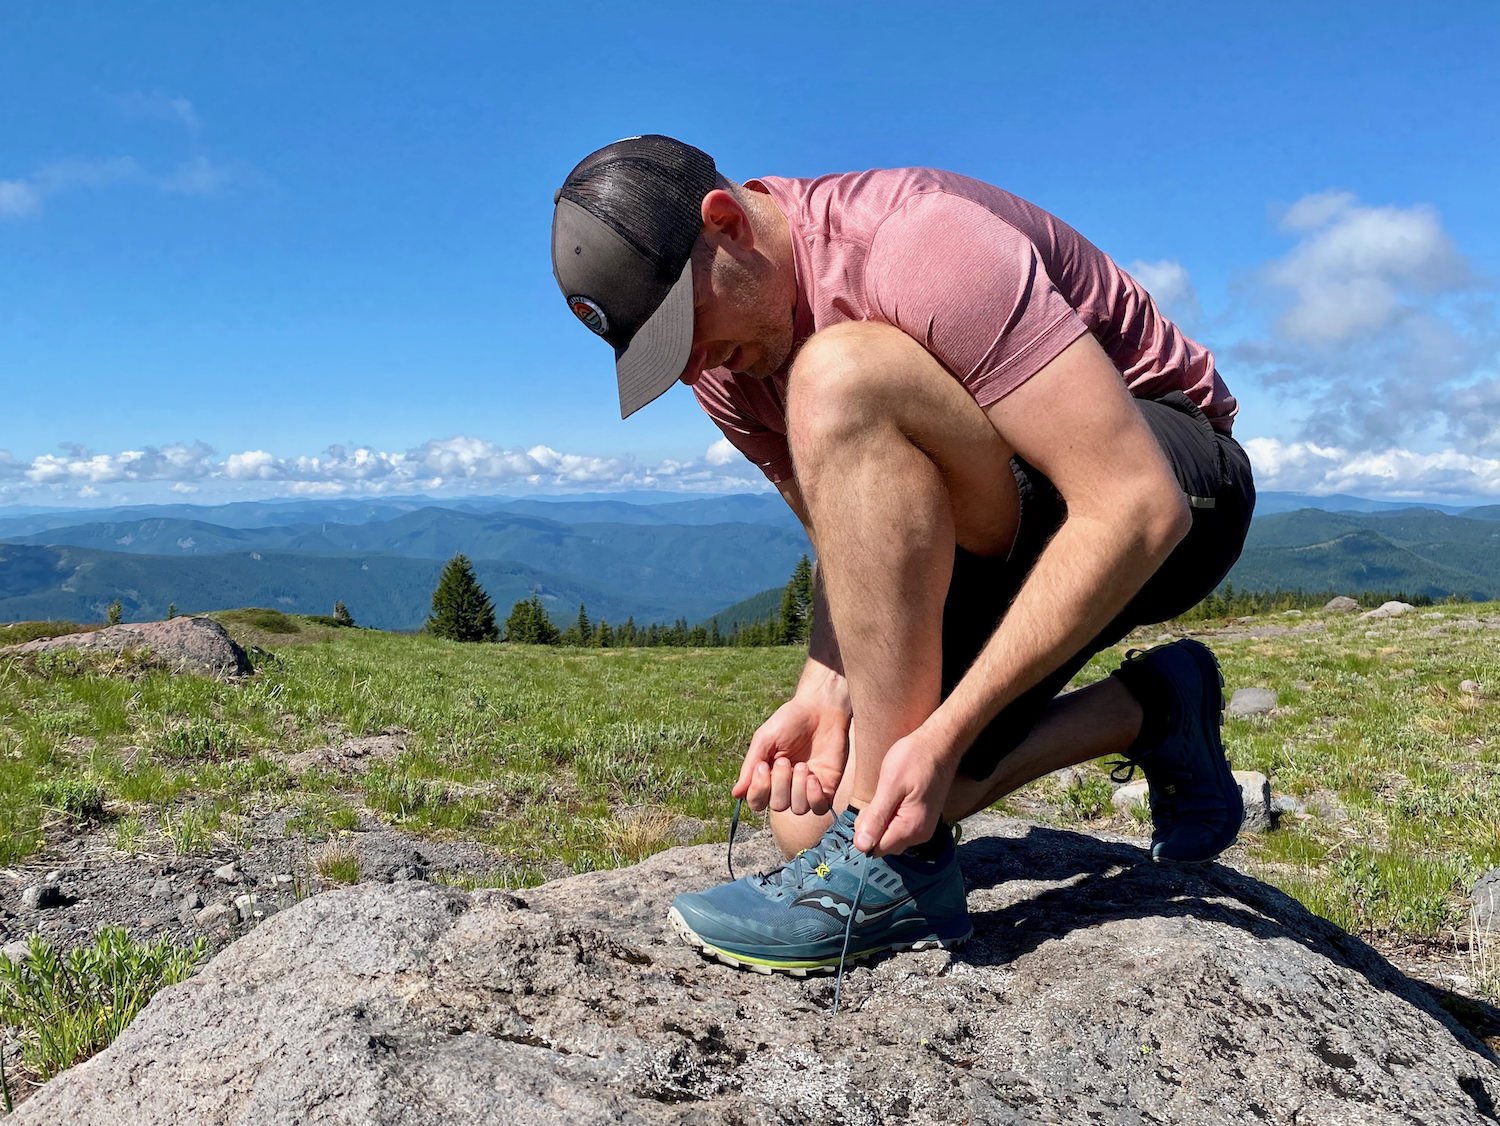 Un excursionista atándose el zapato con una amplia vista del valle al fondo